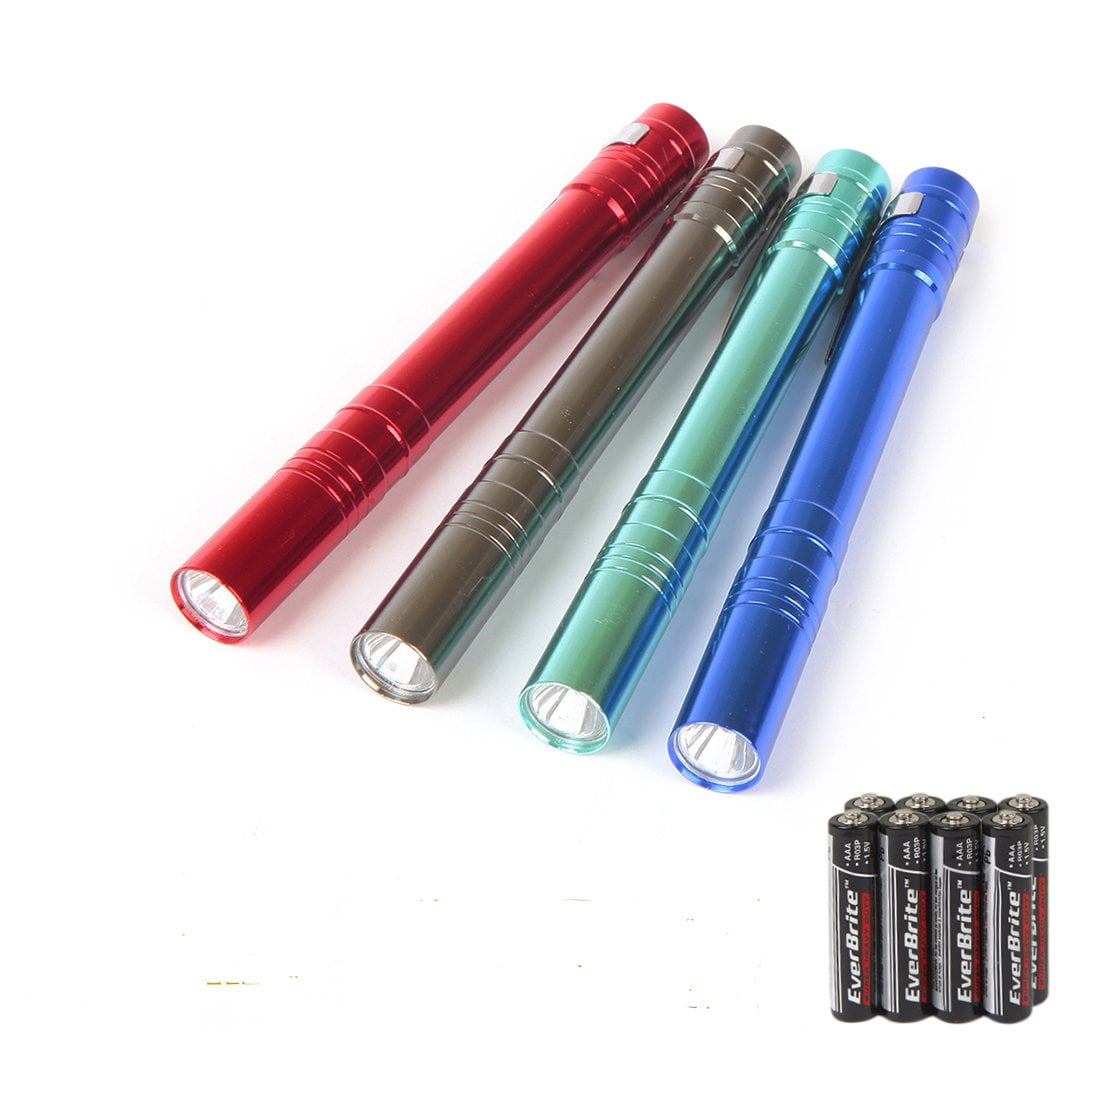 Details about   4 Color Pocket LED Penlight Foreman Gerber Flashlight with 4 Light Heads w/ Bag 